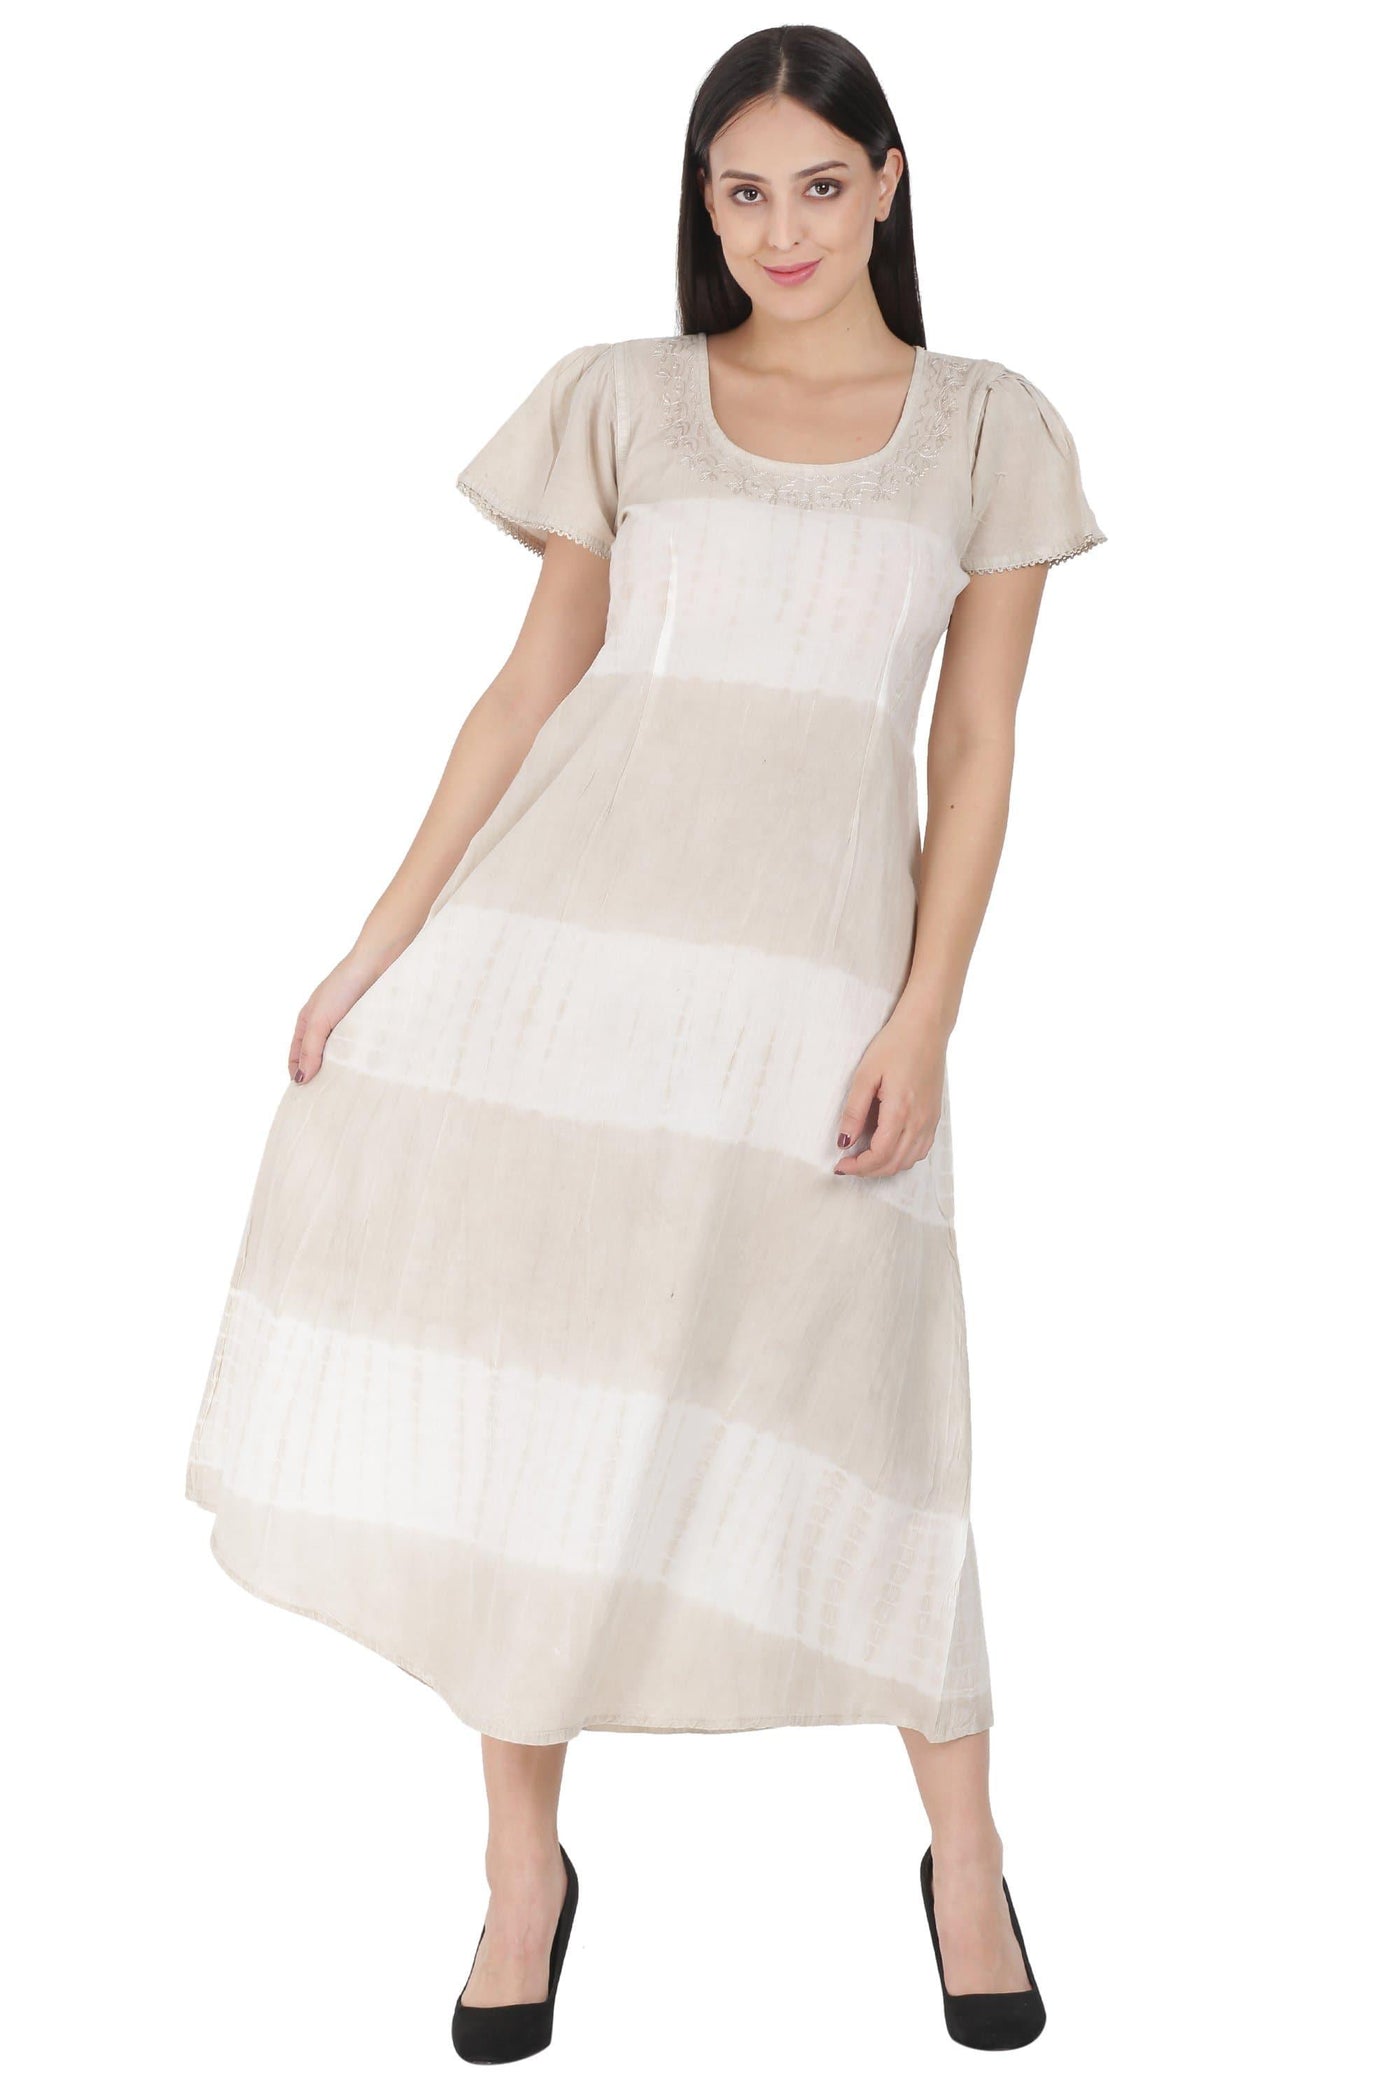 Organic Maxi Dress LTD-674 - Advance Apparels Inc